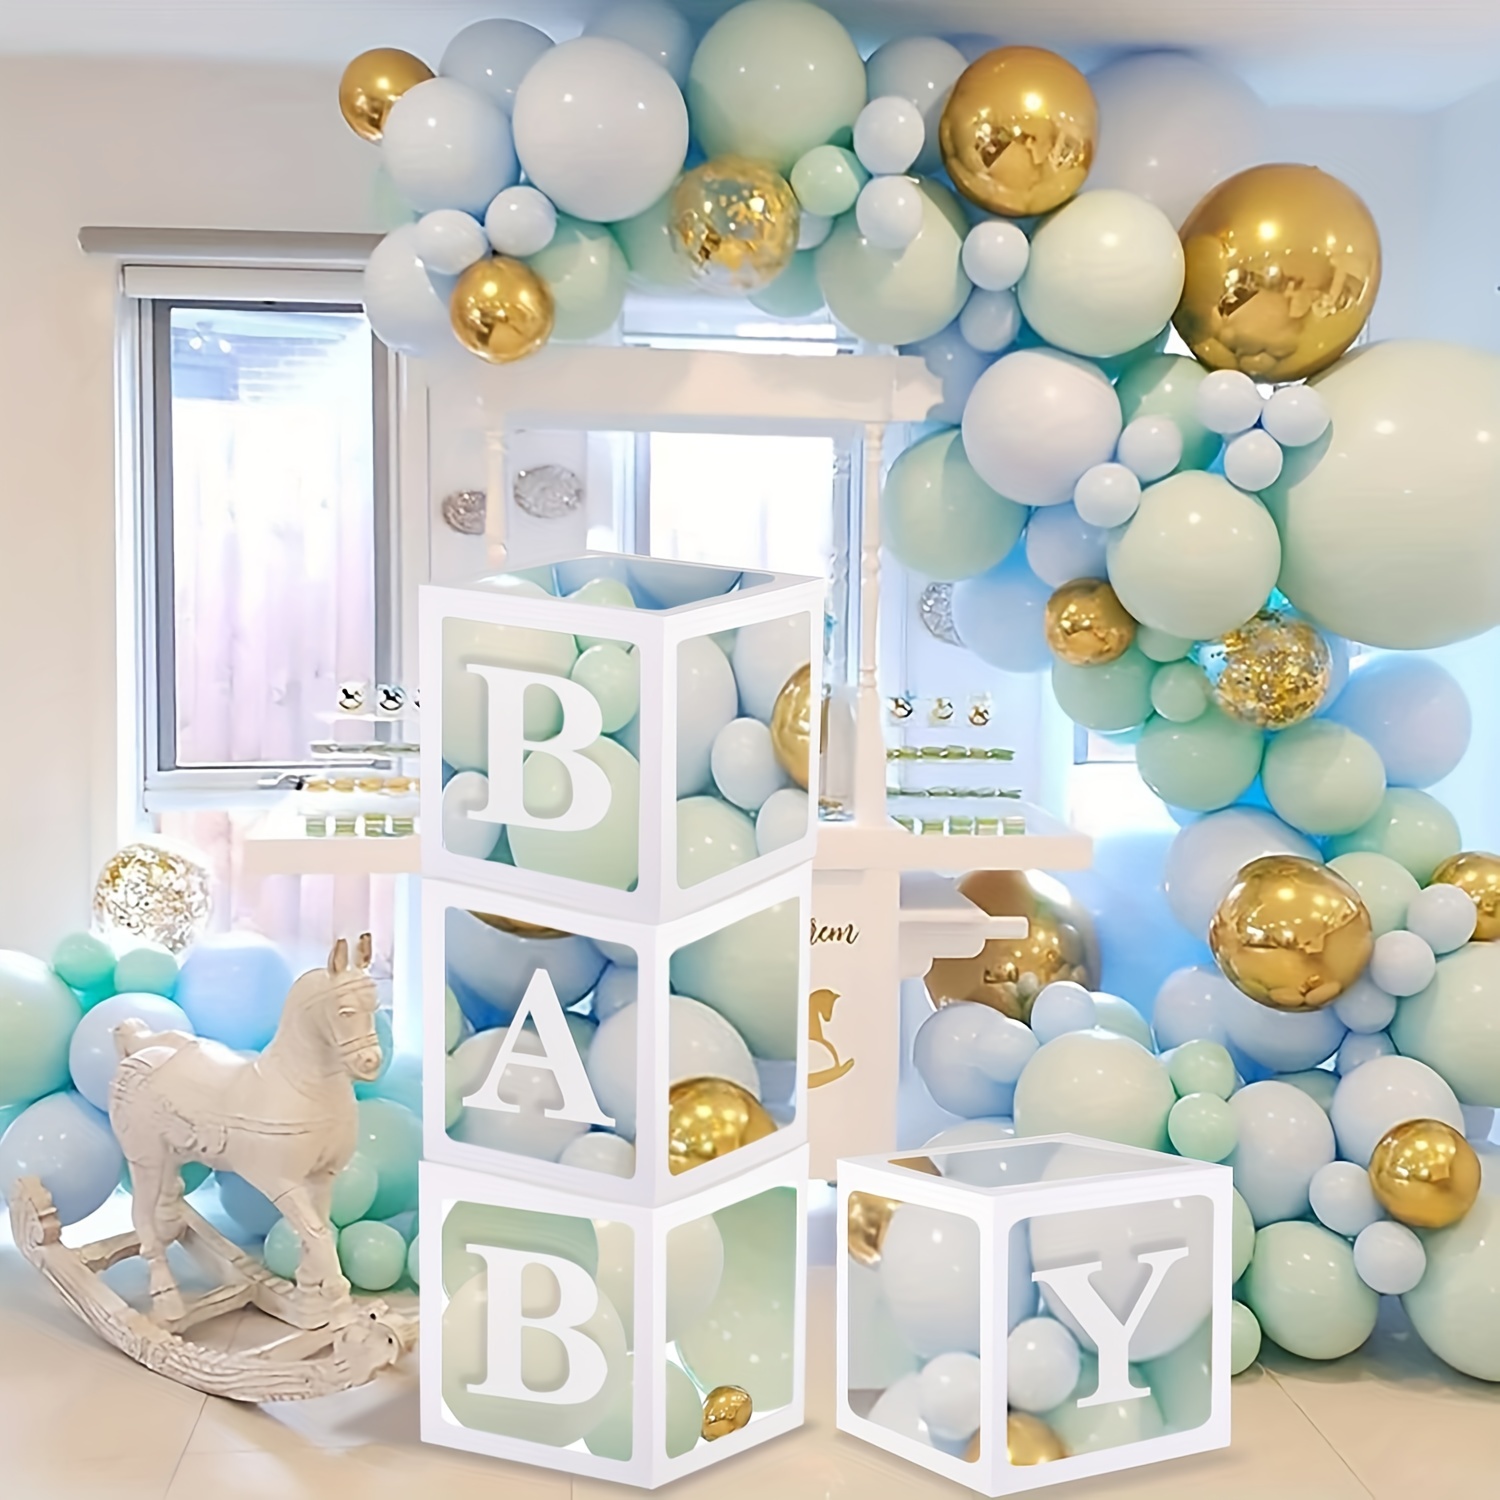 Boites De Ballons A Air De 30cm Pour Fete Prenatale, Decorations